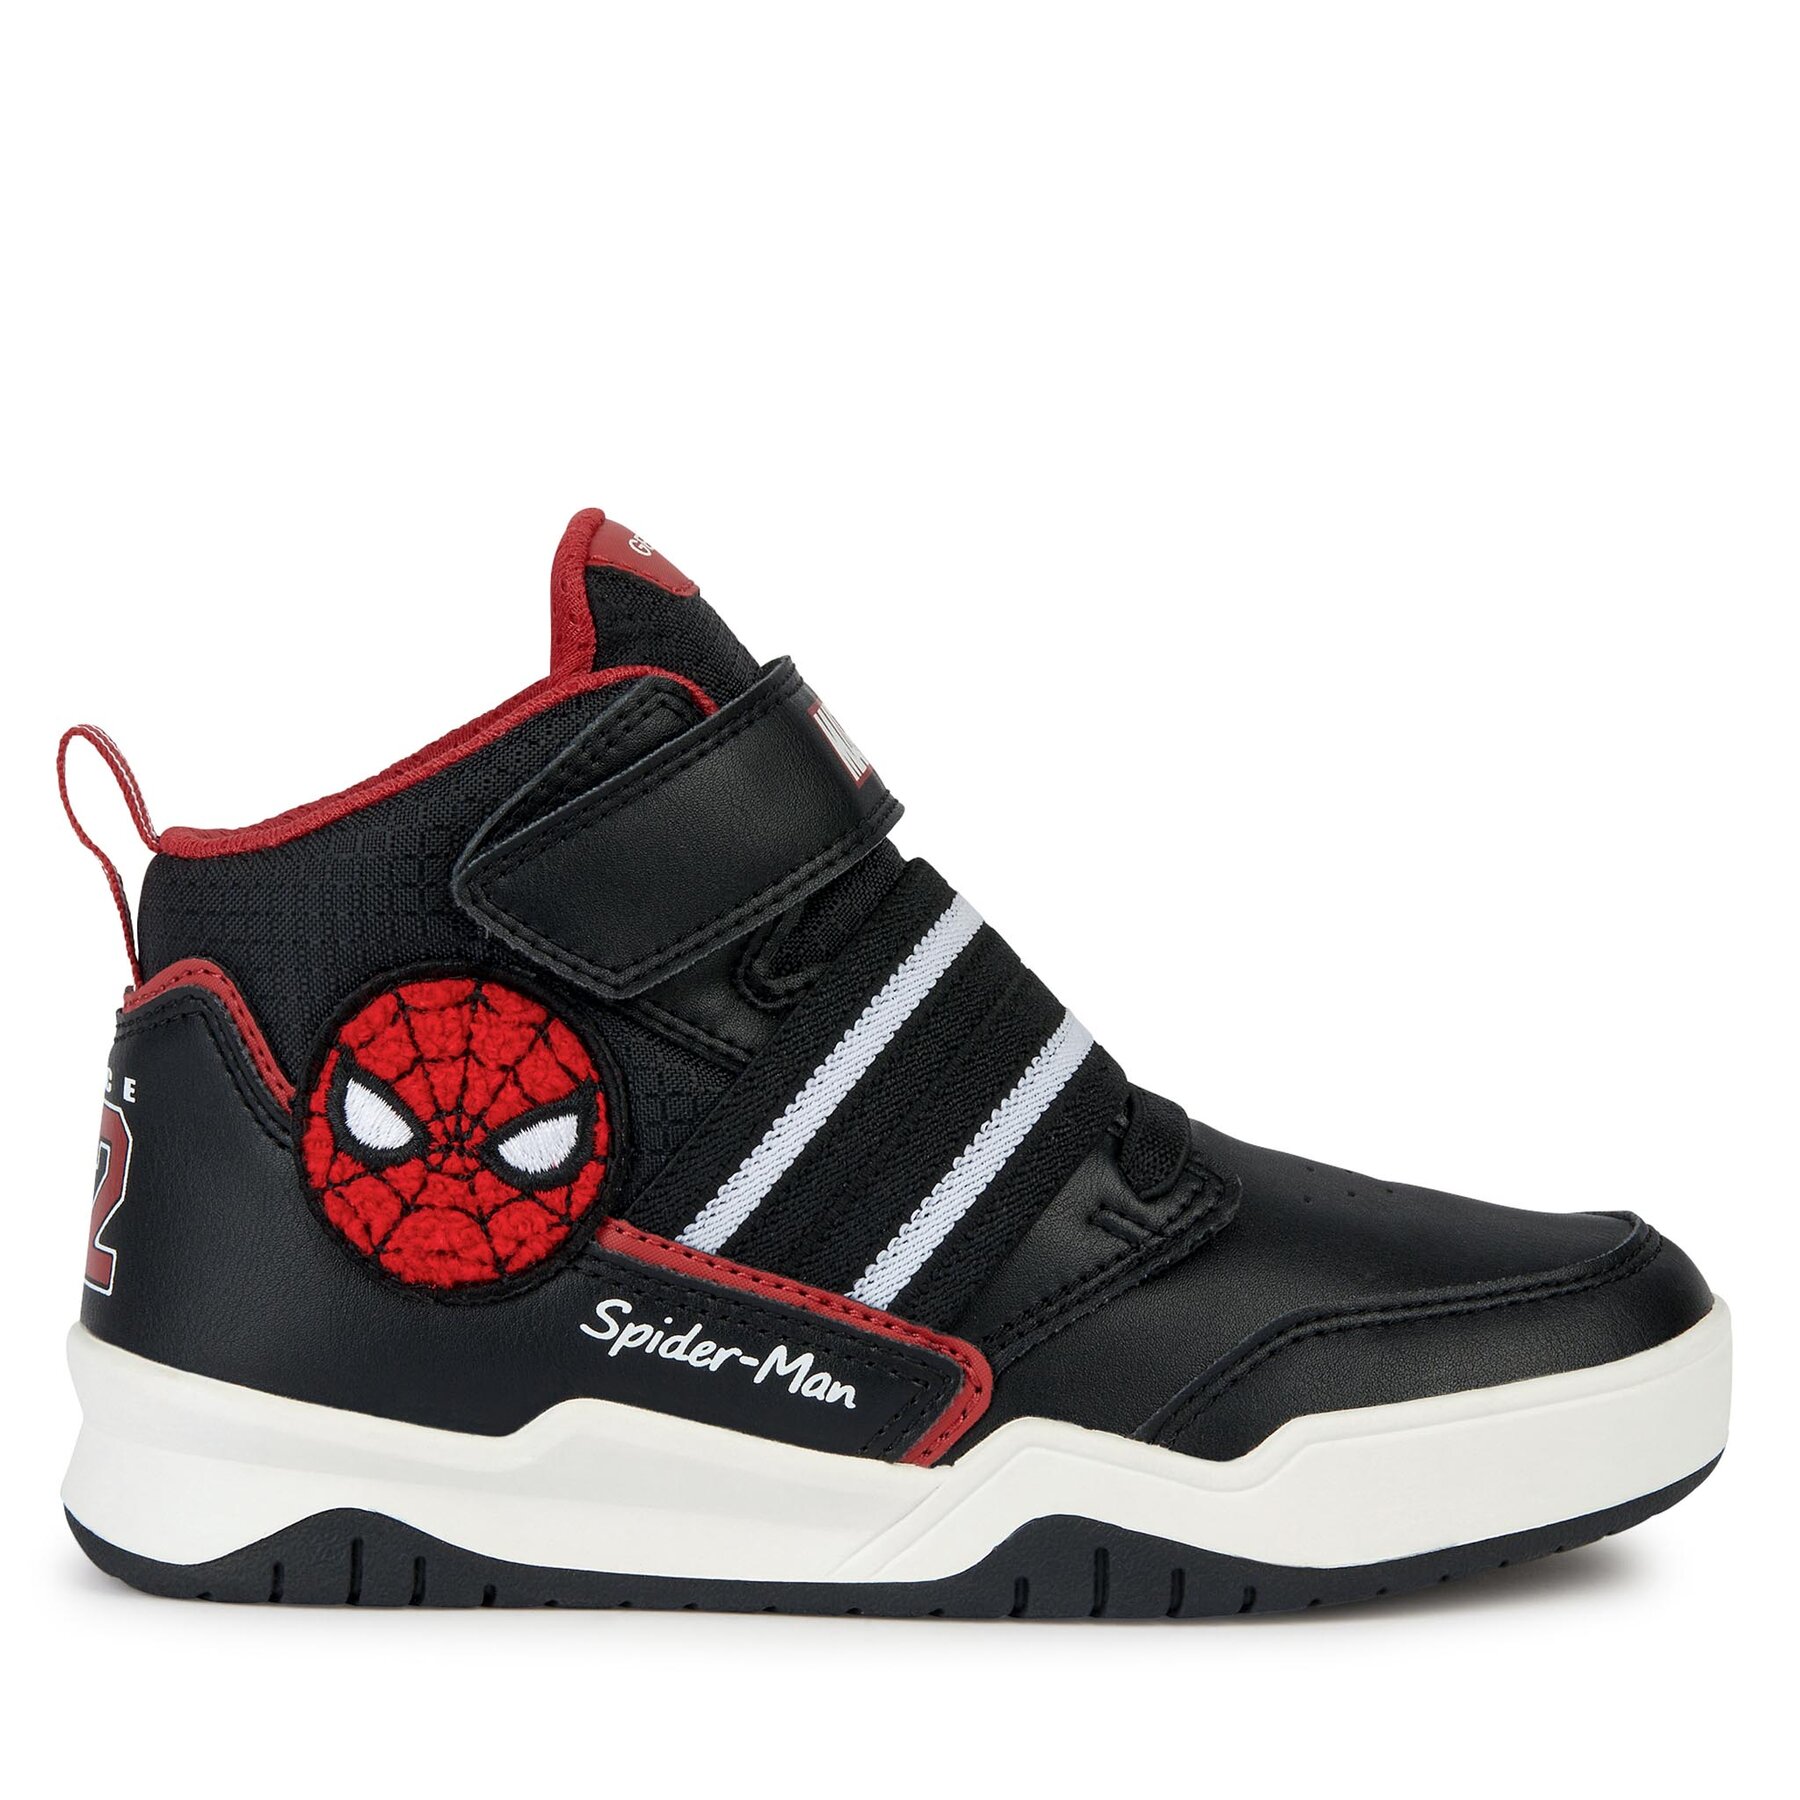 Sneakers Geox SPIDER-MAN J Perth Boy J367RD 05411 C0048 S Black/Red von Geox